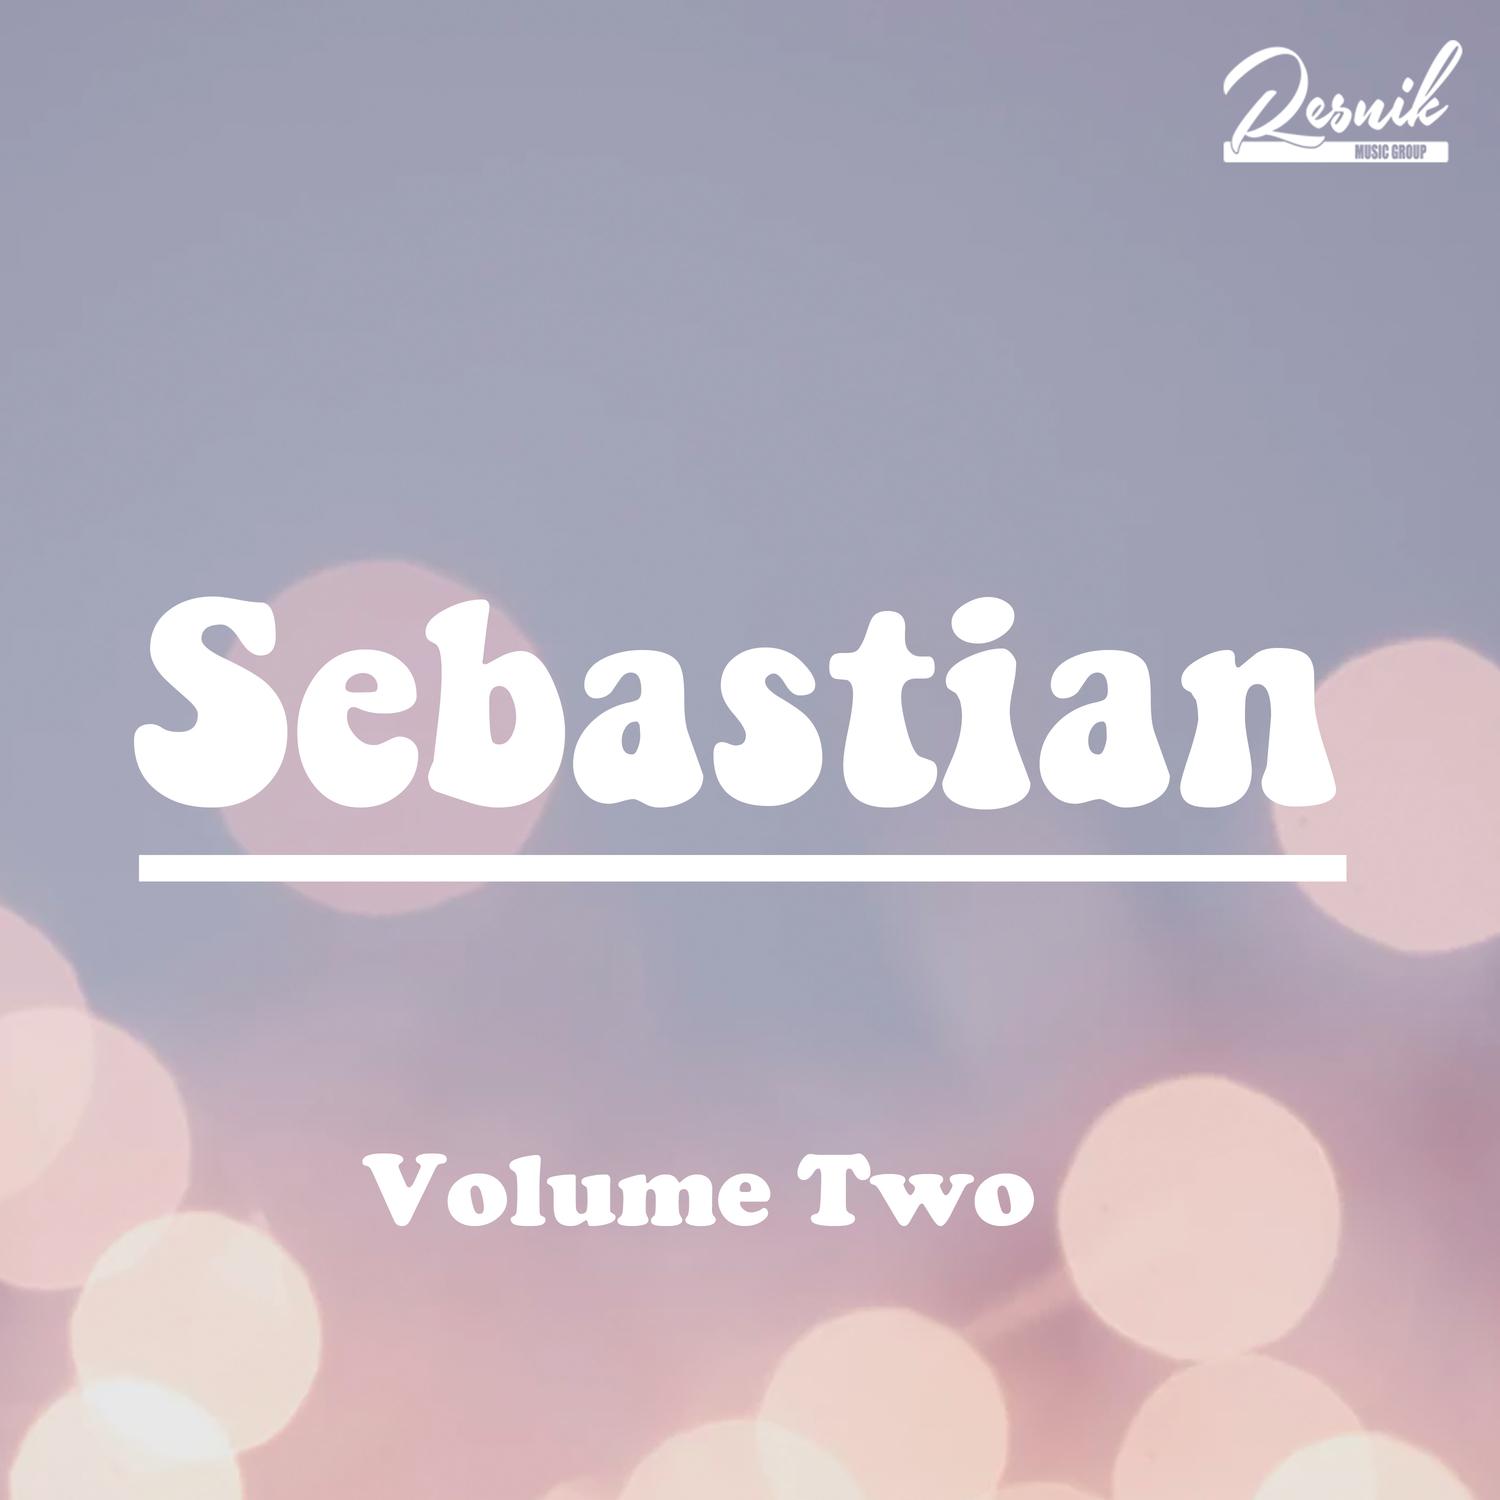 Sebastian Vol. 2